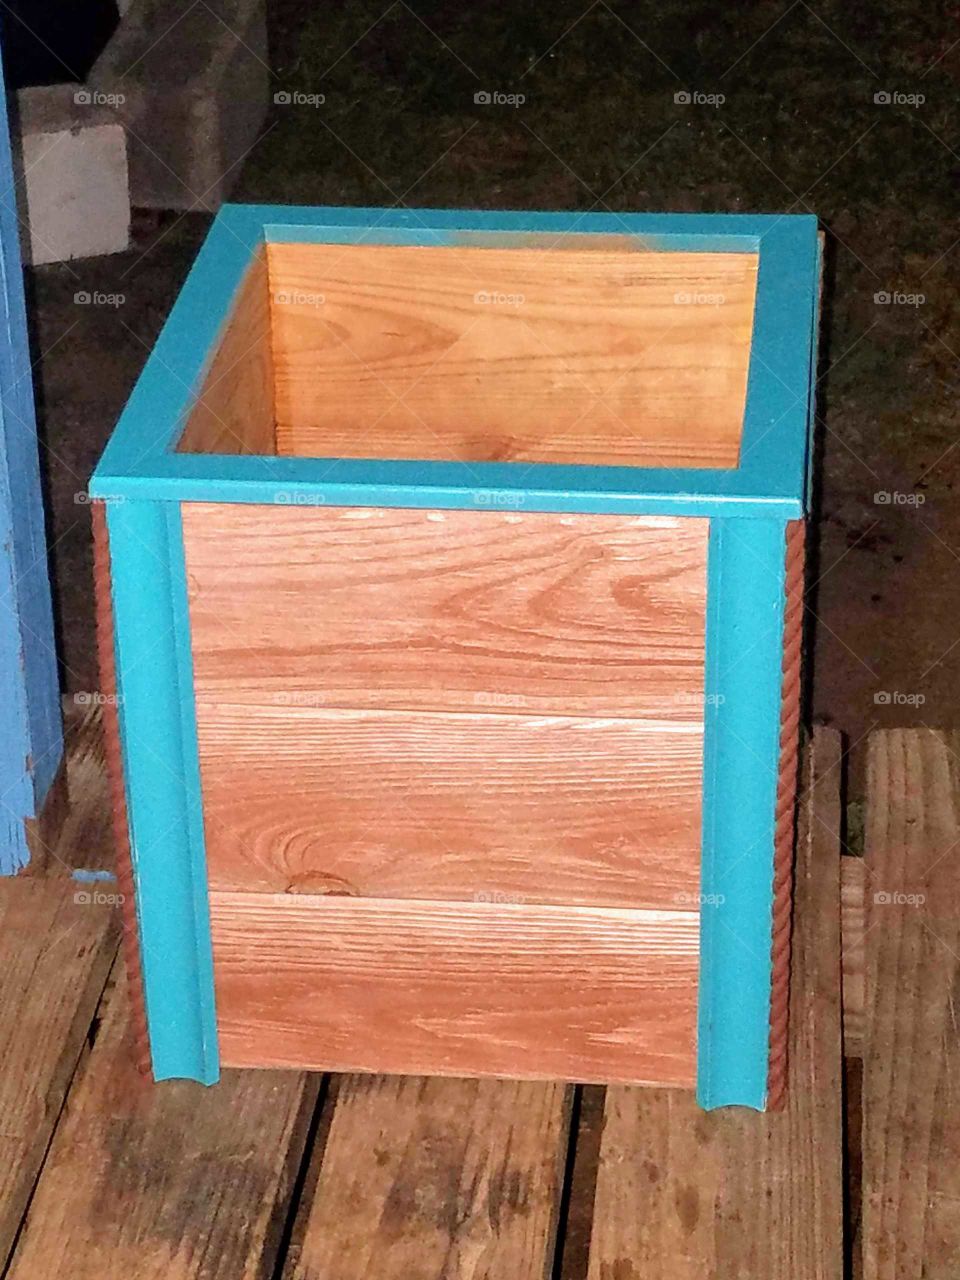 Home made planter box